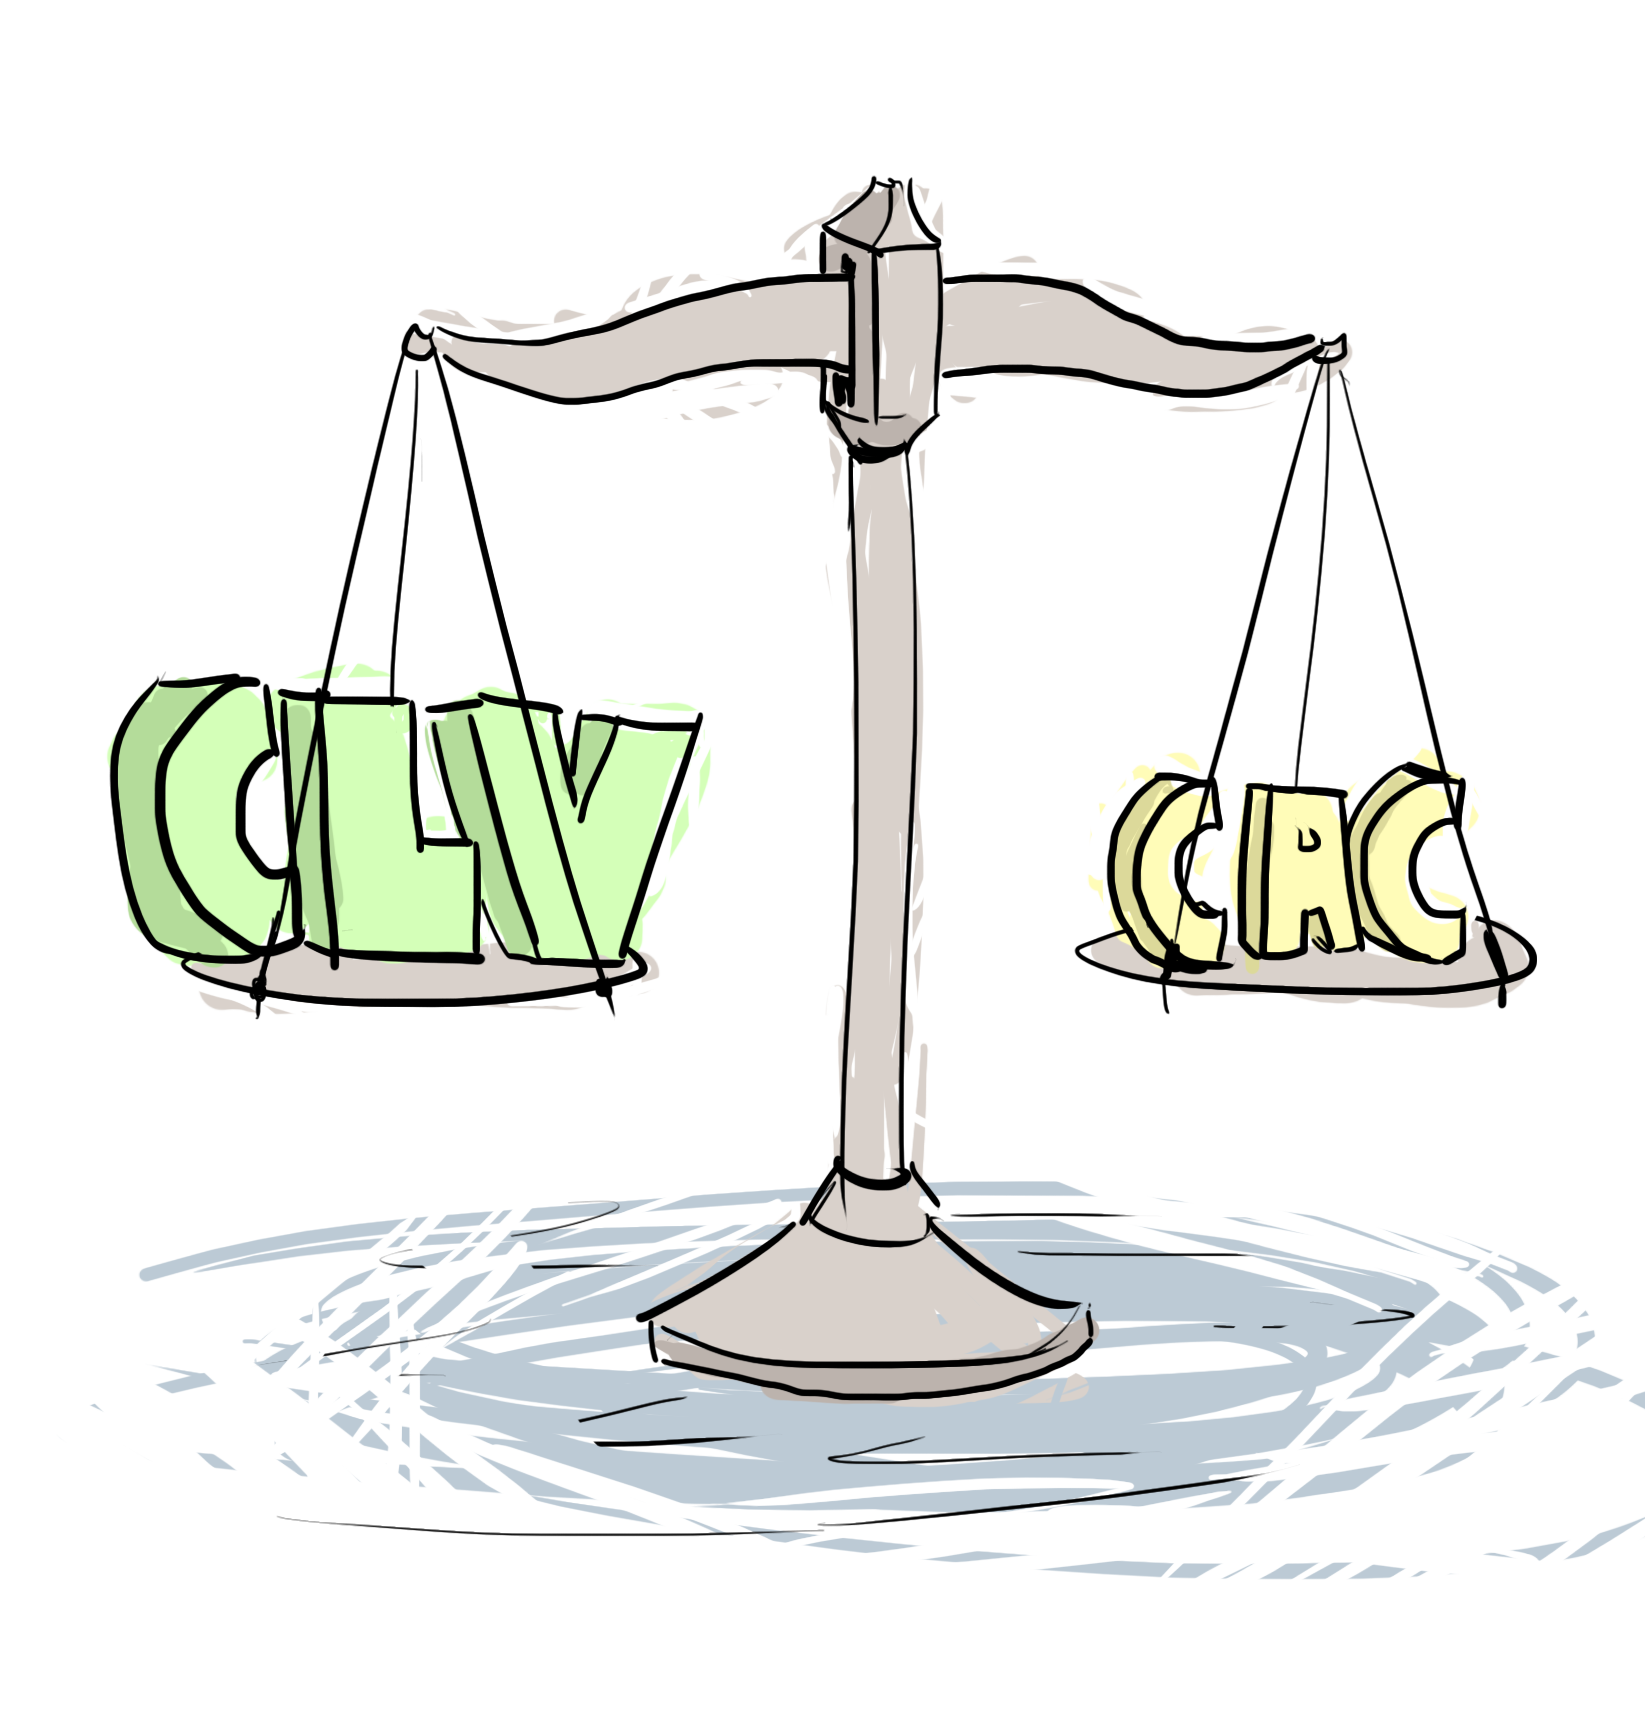 CLV >= 2 * CAC